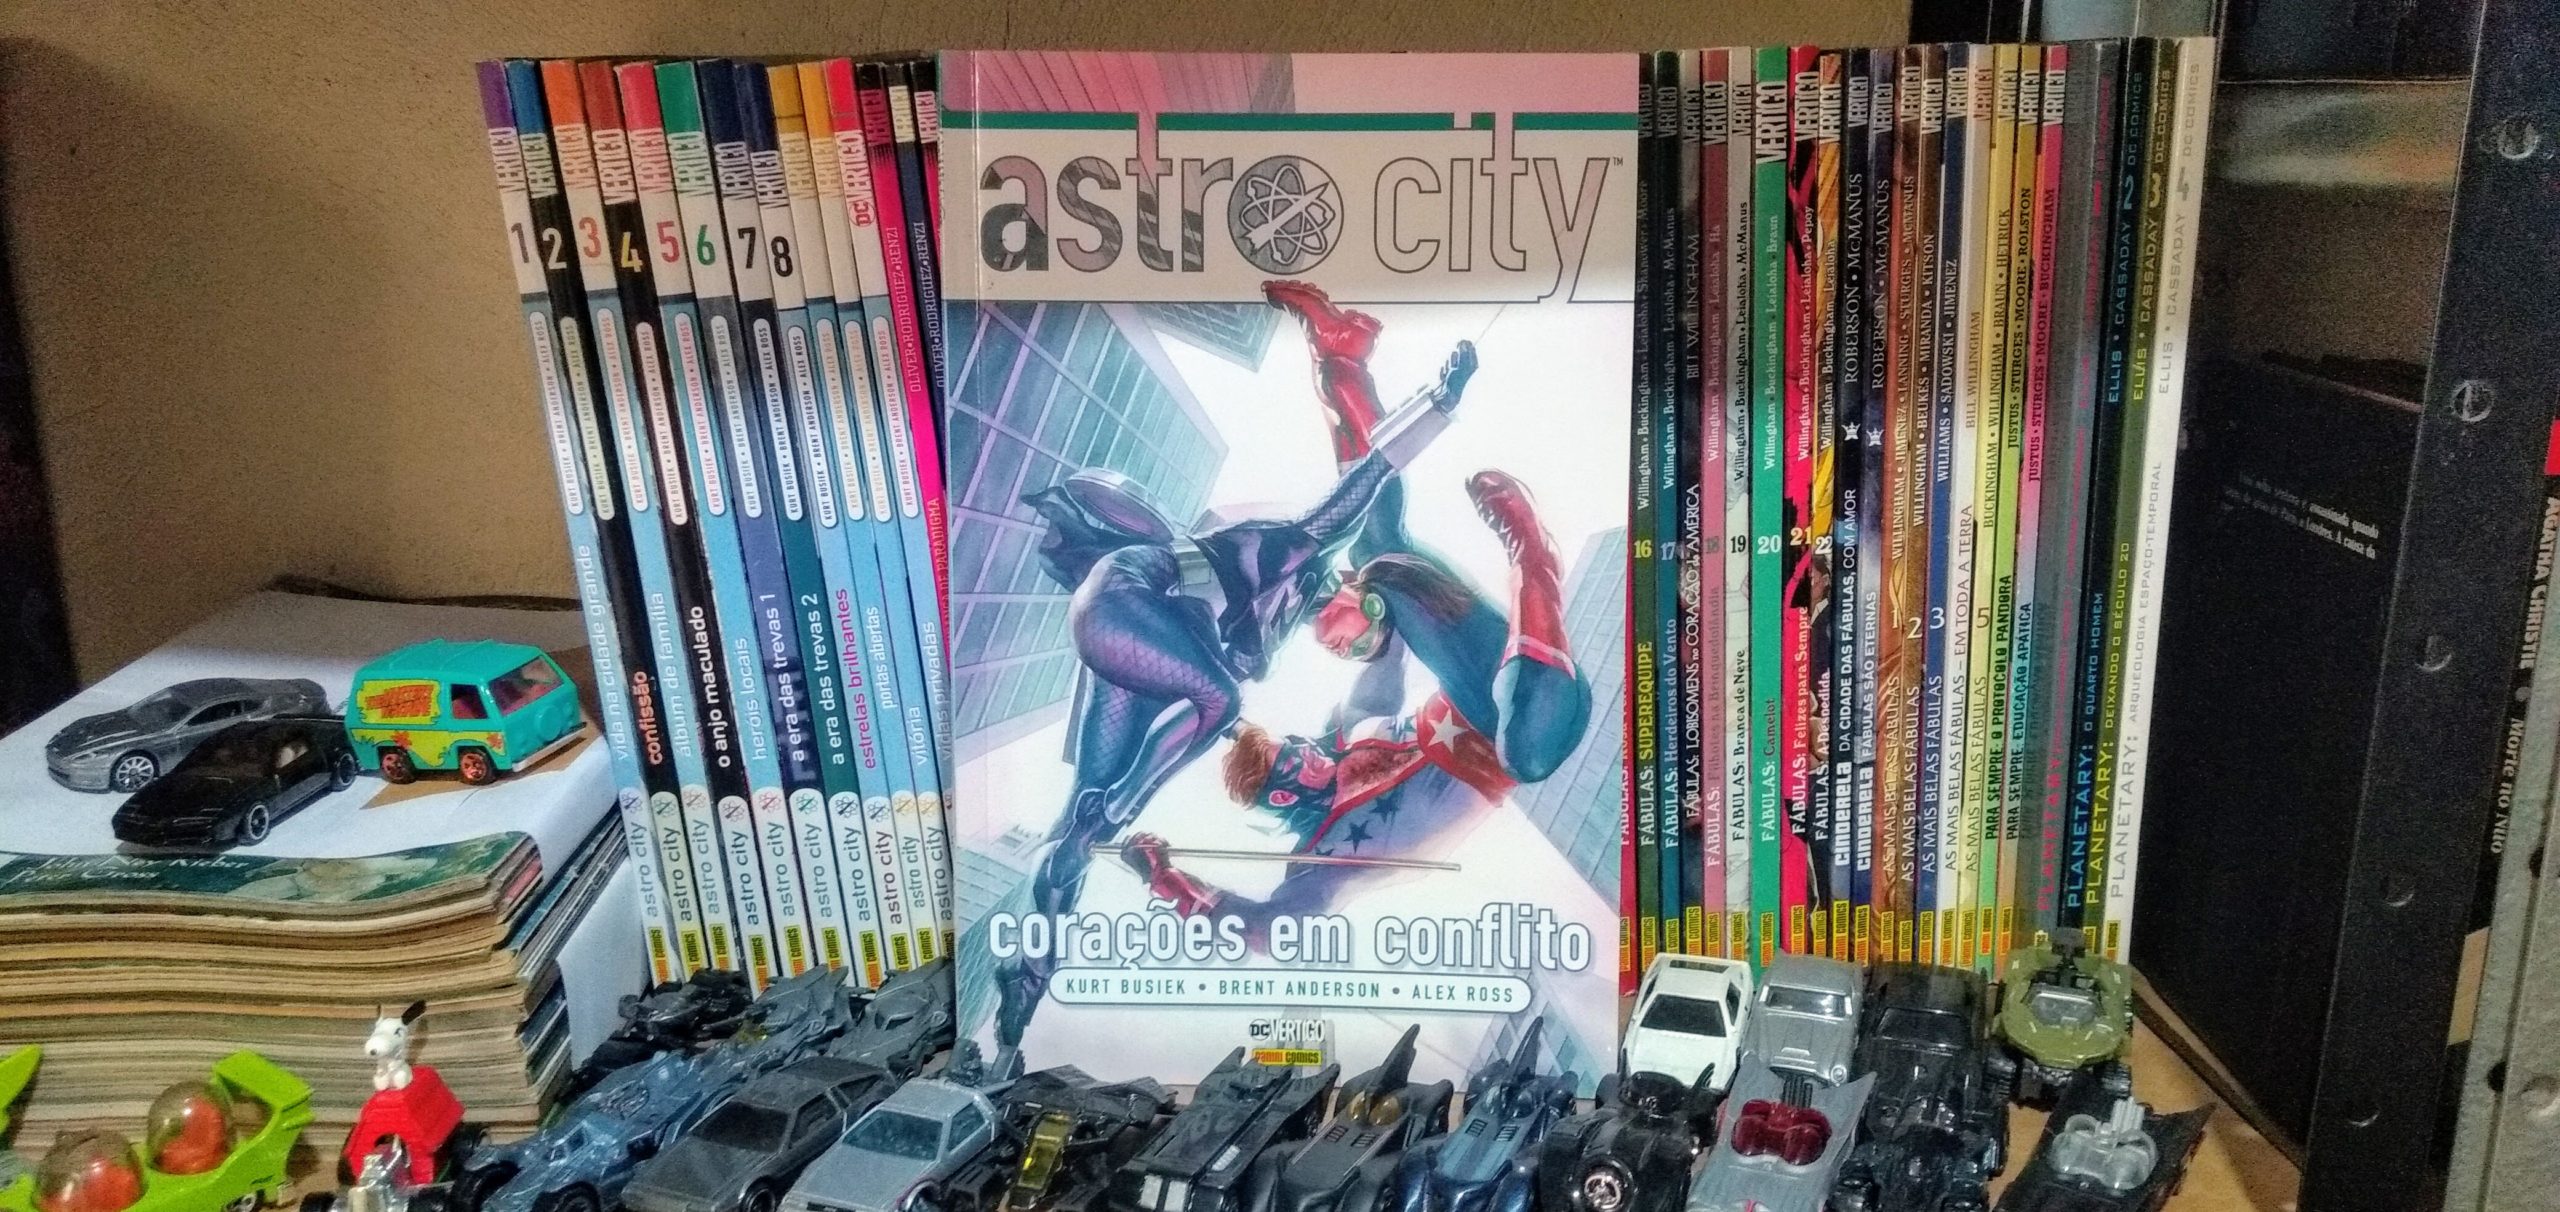 Astro City vol. 12 - Corações em Conflito - outubro de 2019 - capa